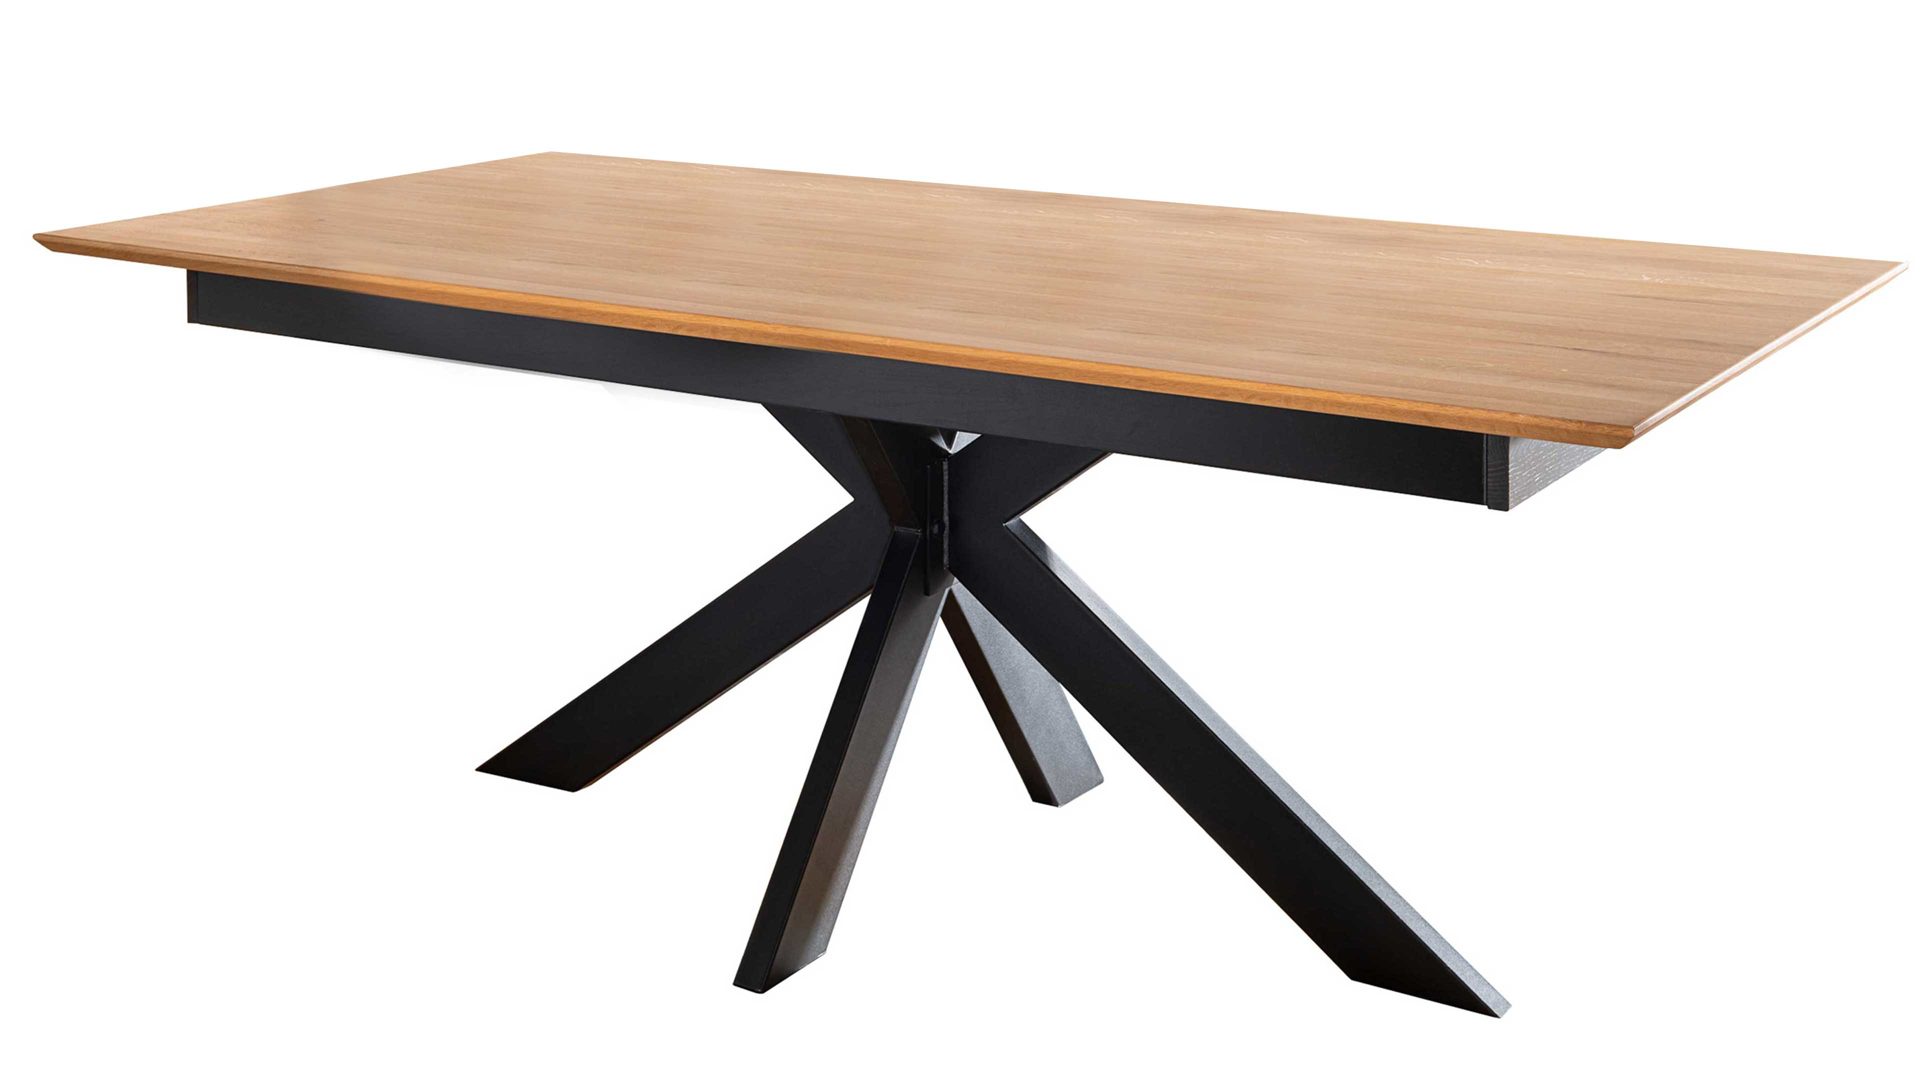 Auszugtisch 3s frankenmöbel aus Holz in Holzfarben 3S frankenmöbel Auszugtisch Wildeiche & schwarzes Metall - ca. 180 - 265 x 100 cm